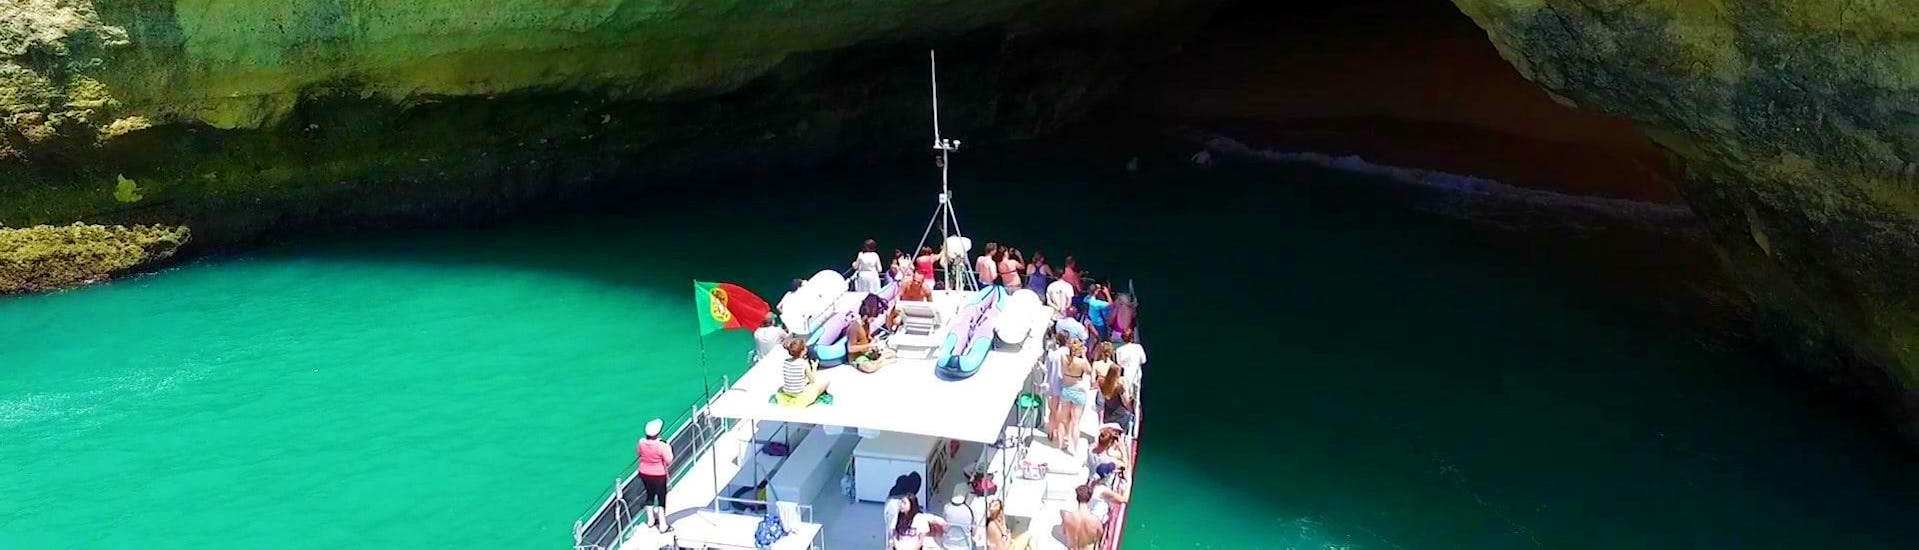 Balade en bateau "Barbeque Benagil" depuis Vilamoura avec Cruzeiros da Oura Vilamoura.